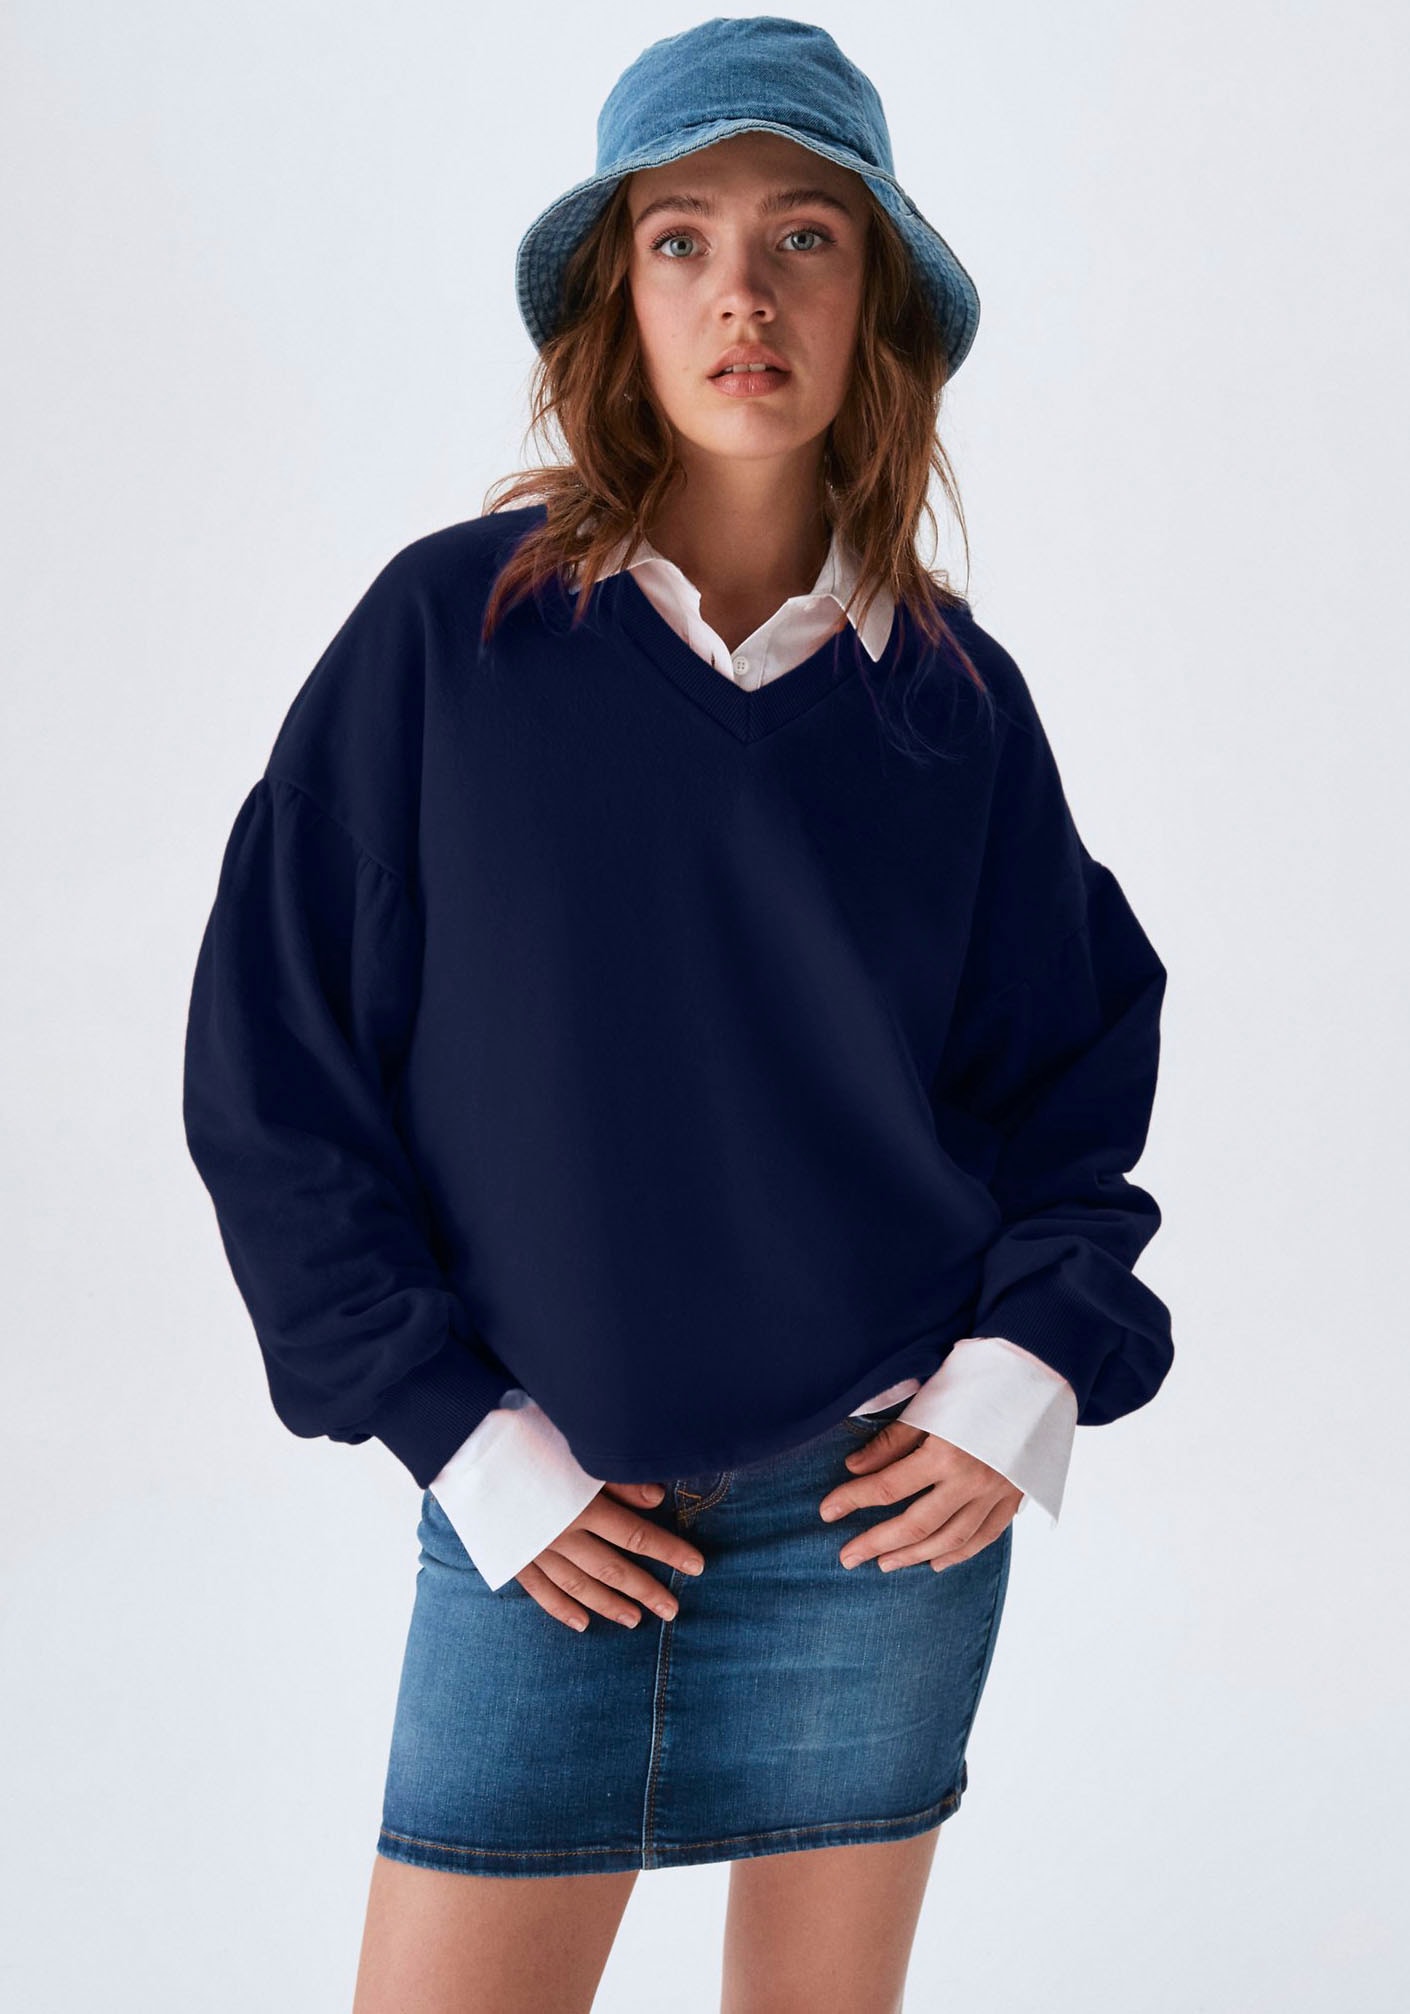 LTB Sweatshirt »FAHOZO«, mit weiten Ärmeln und V-Ausschnitt